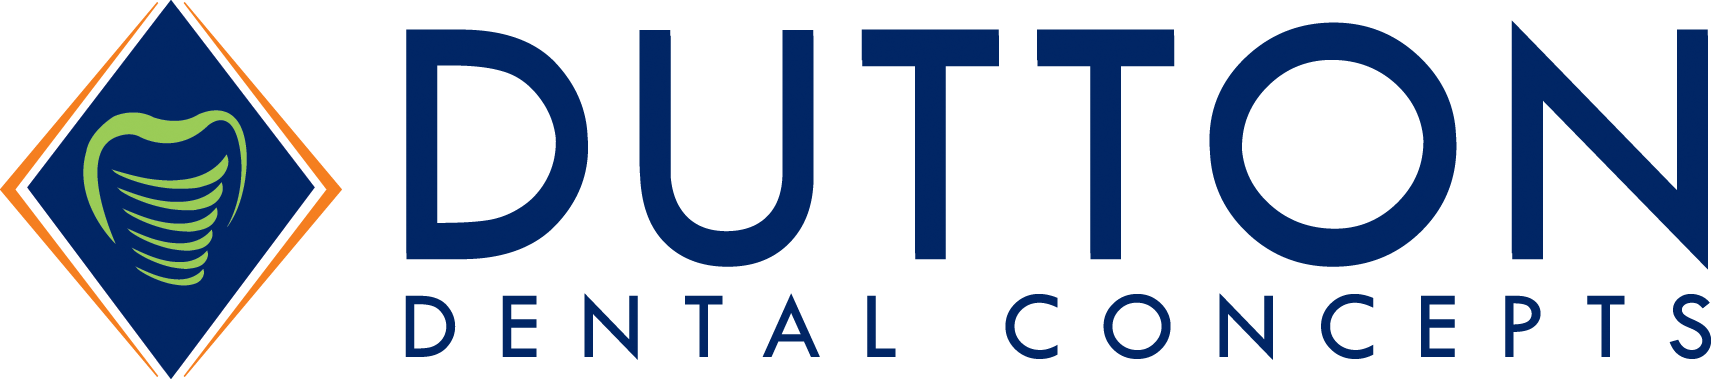 Dutton Dental Concepts Inc.